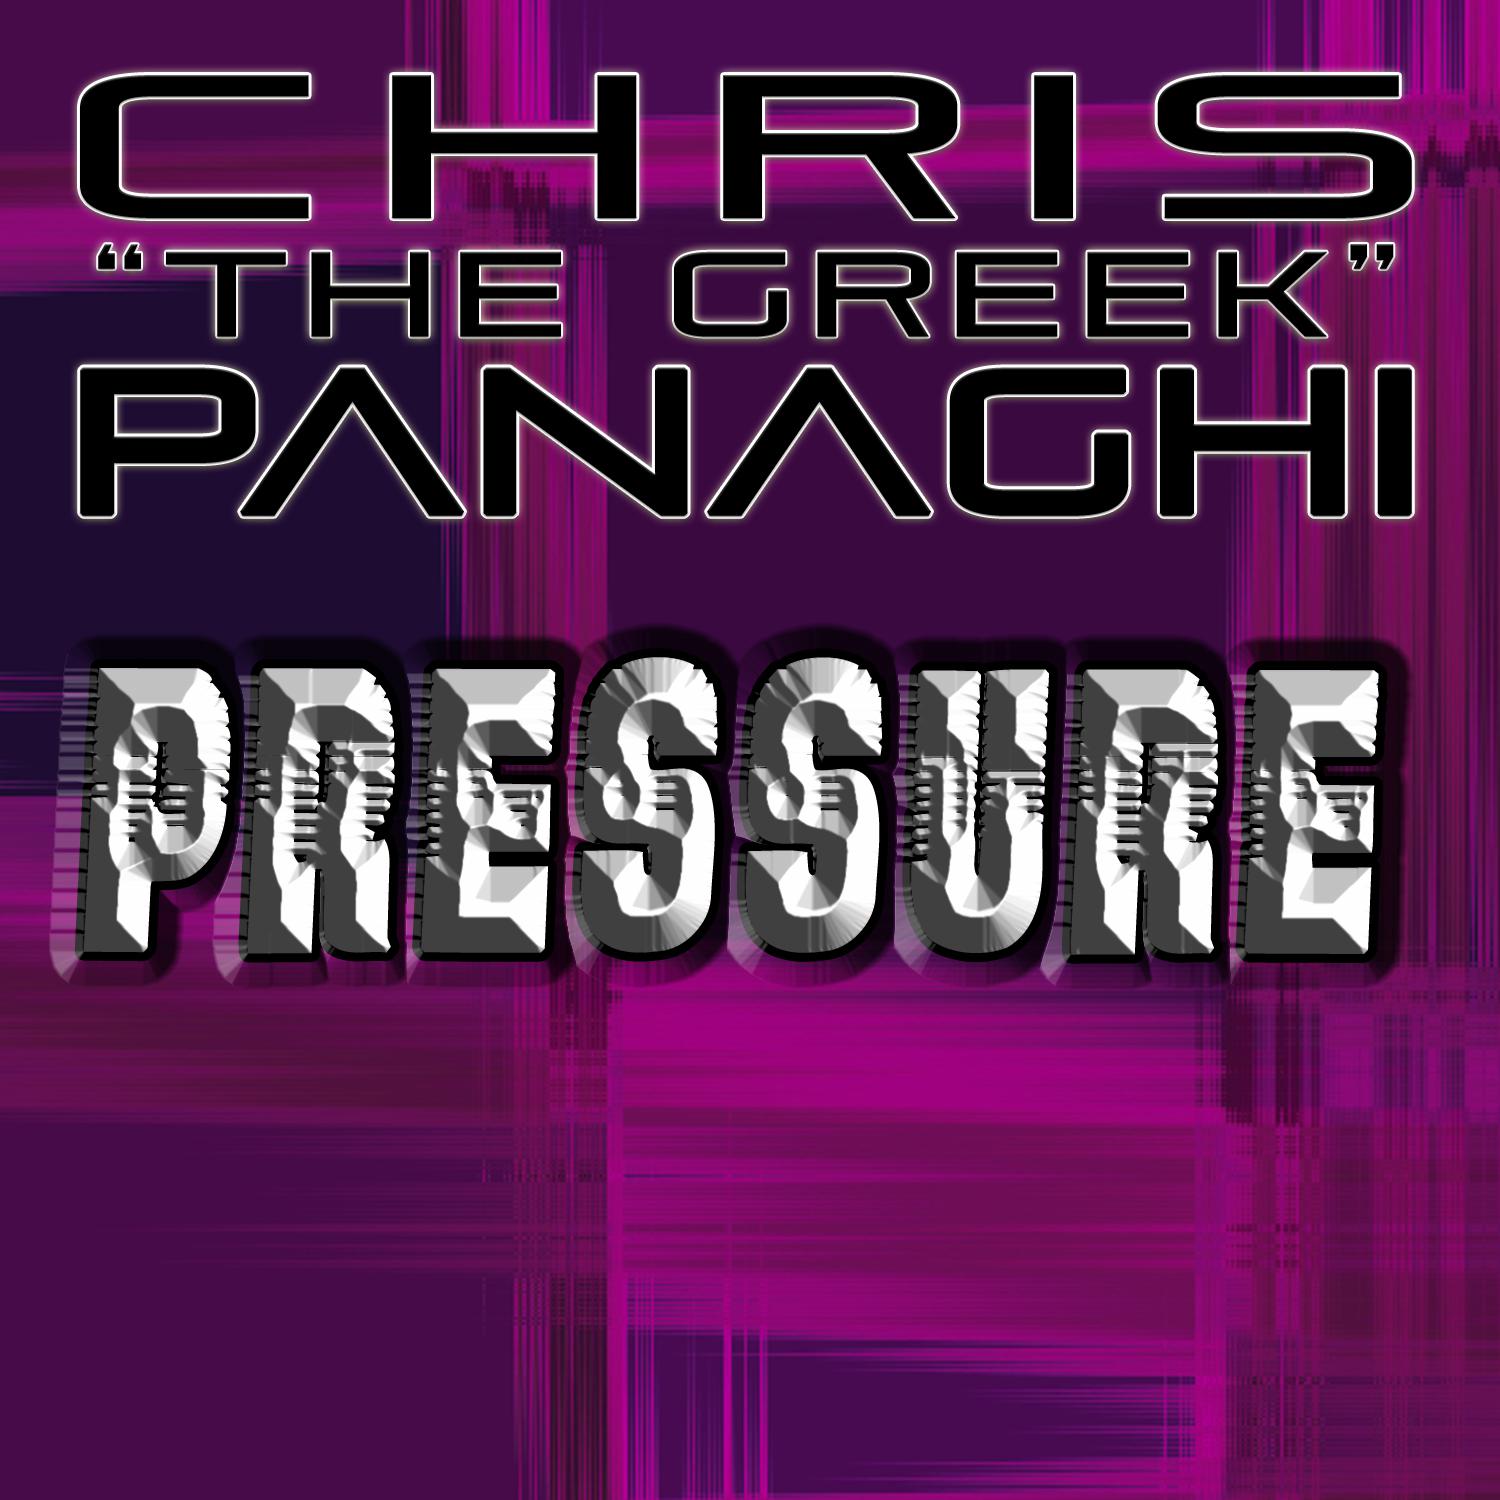 Pressure (DJ Greek's Pressurized Club Mix)